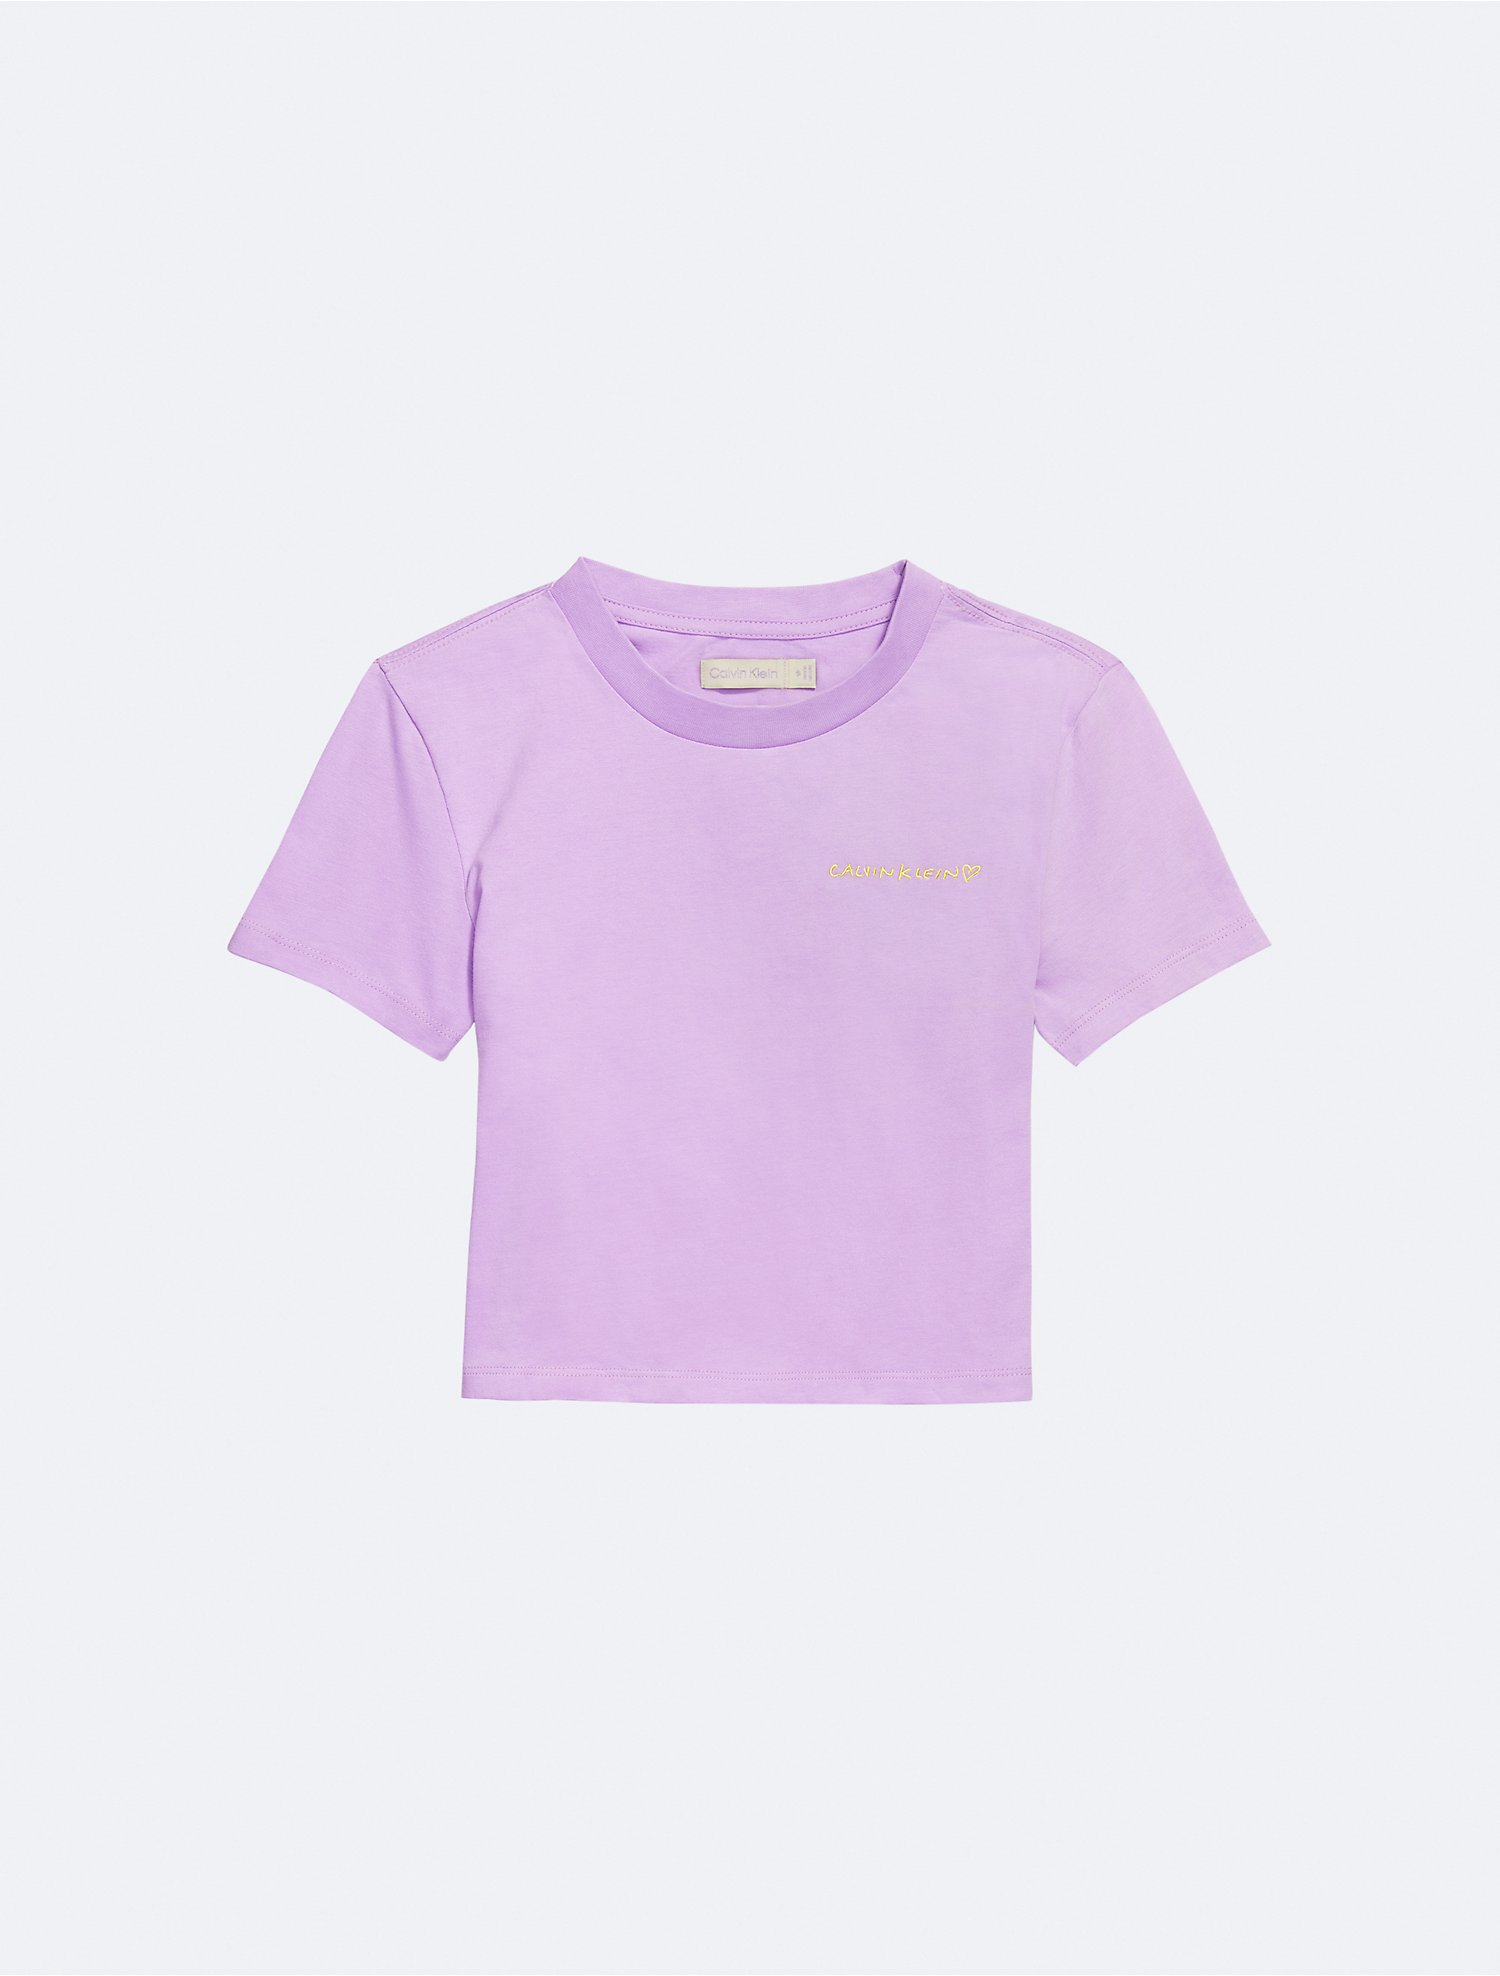 Tシャツ(半袖/袖なし)Jennie for Calvin Klein baby Tee